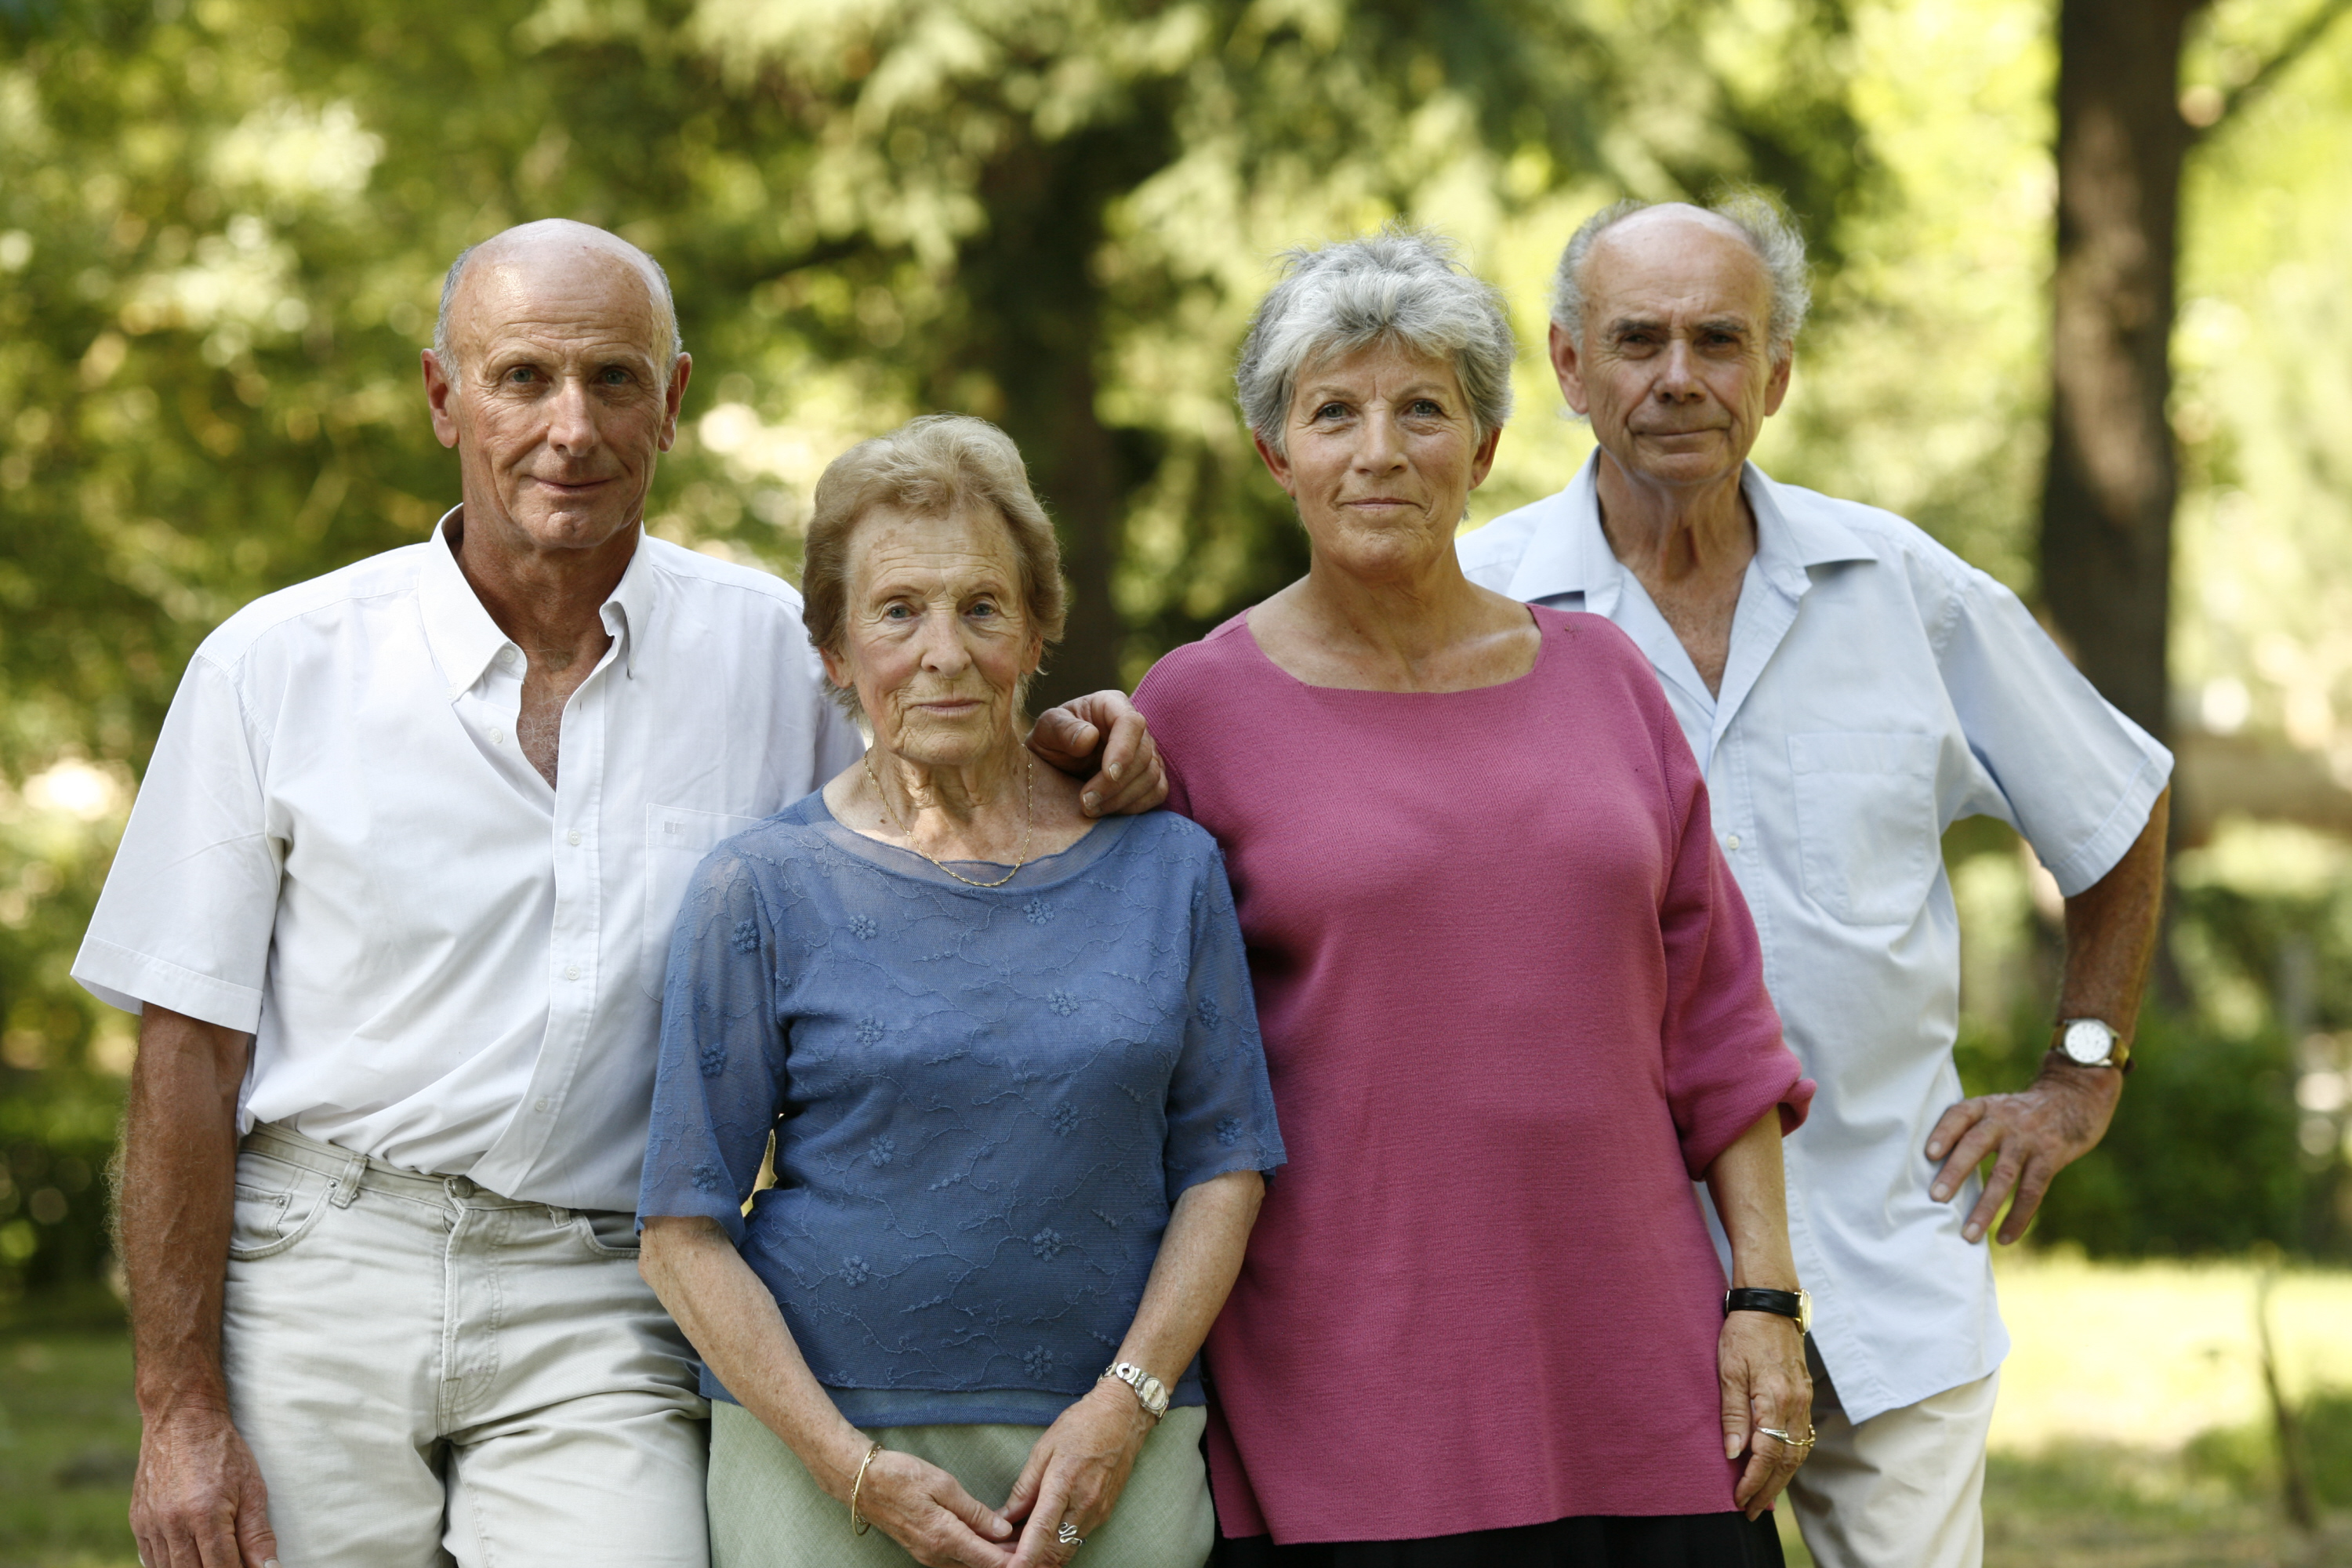 Les aides sociales de la MSA pour les retraités - Aides sociales retraite - MSA Beauce Coeur de Loire